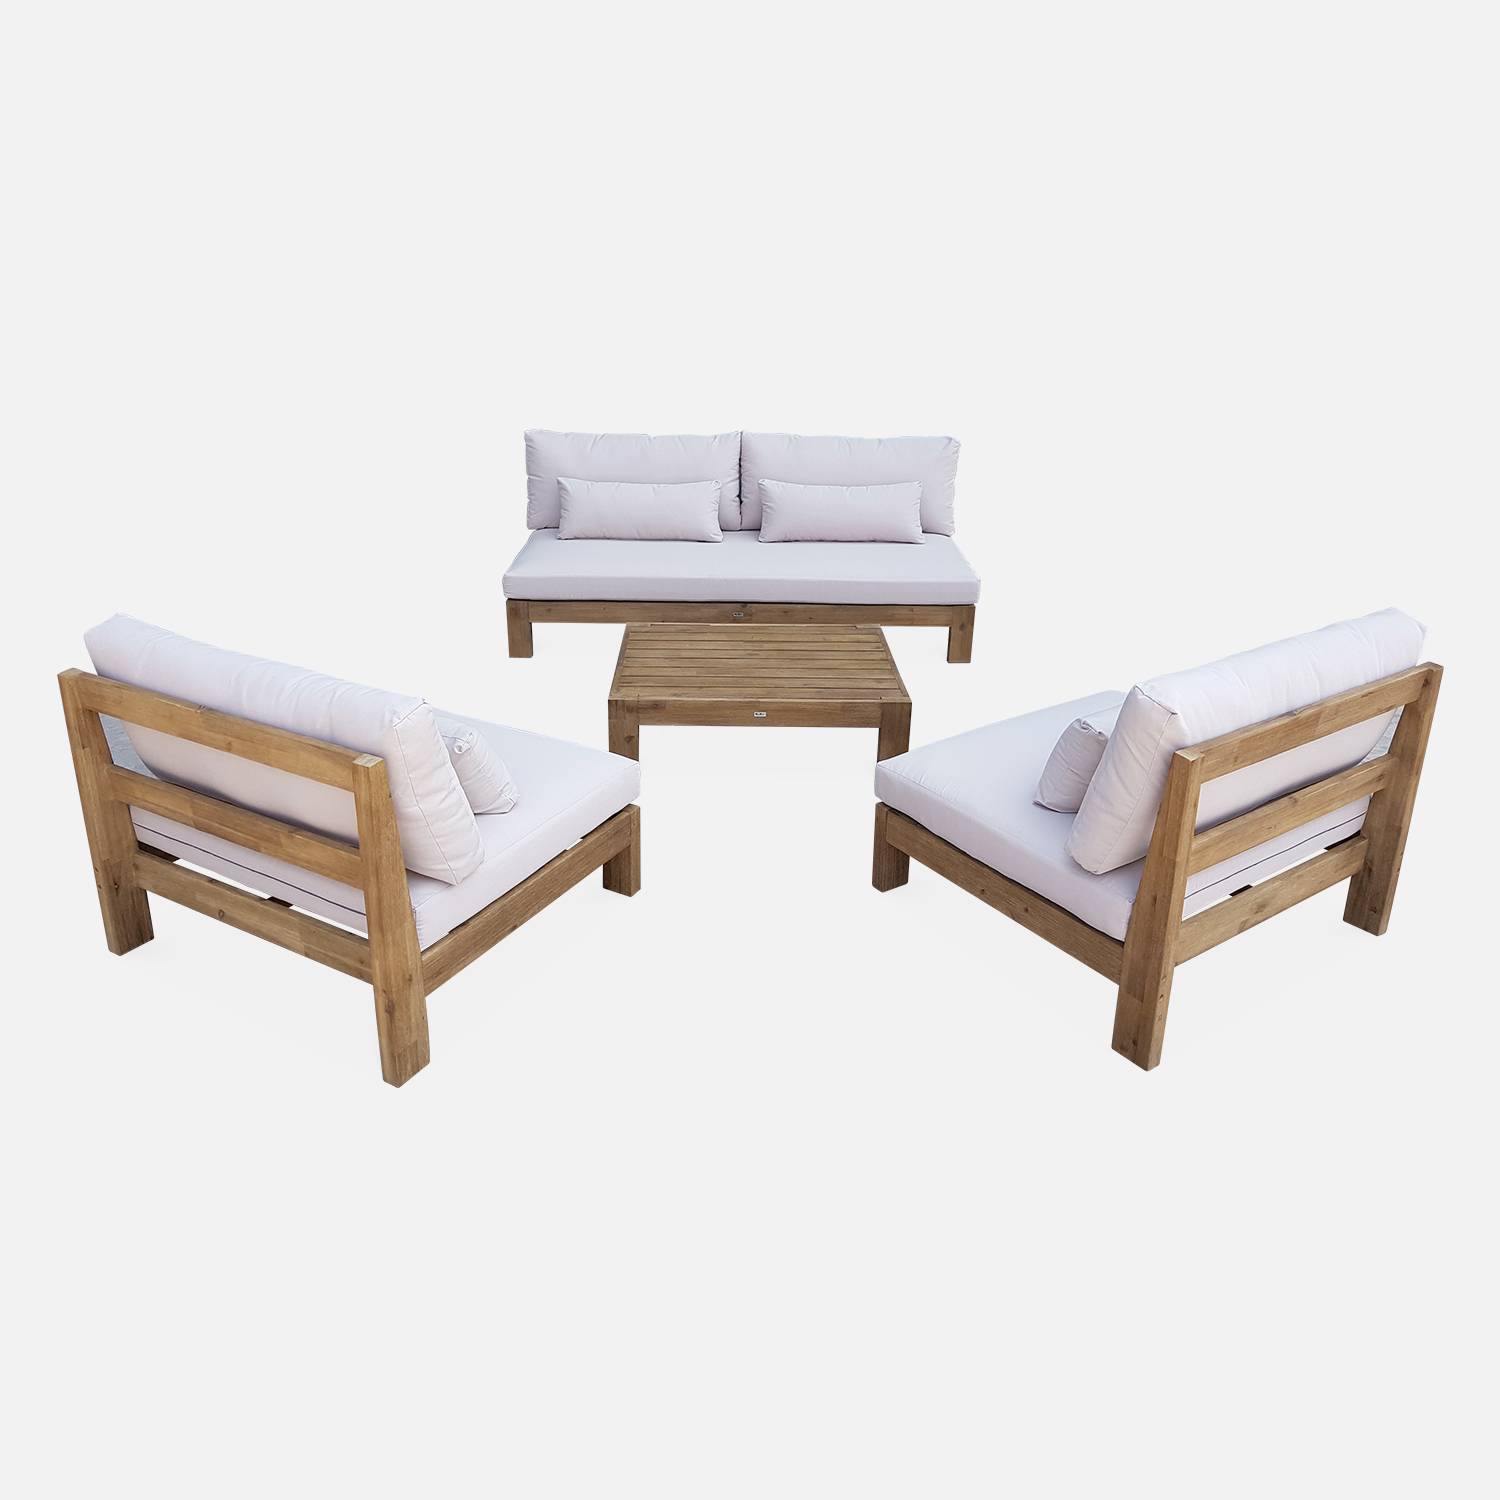 Salon de jardin XXL en bois brossé, effet blanchi – BAHIA – coussins beiges, ultra confortable, 5 places Photo4